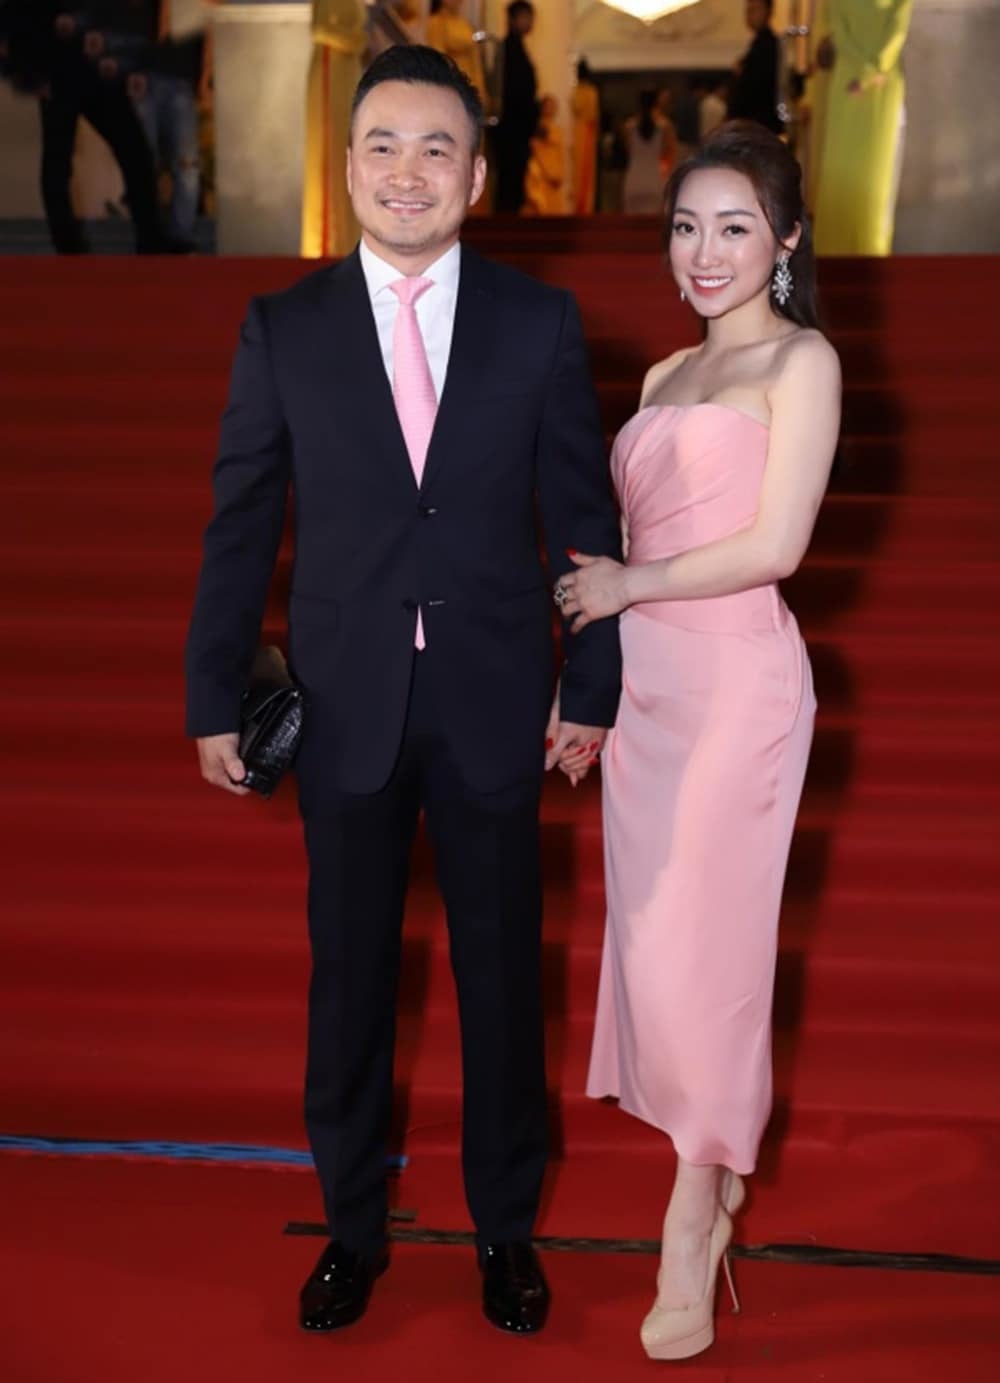  
Nam diễn viên "tay trong tay" cùng bạn gái Thùy Chang trong sự kiện tối qua 9/1.  - Tin sao Viet - Tin tuc sao Viet - Scandal sao Viet - Tin tuc cua Sao - Tin cua Sao